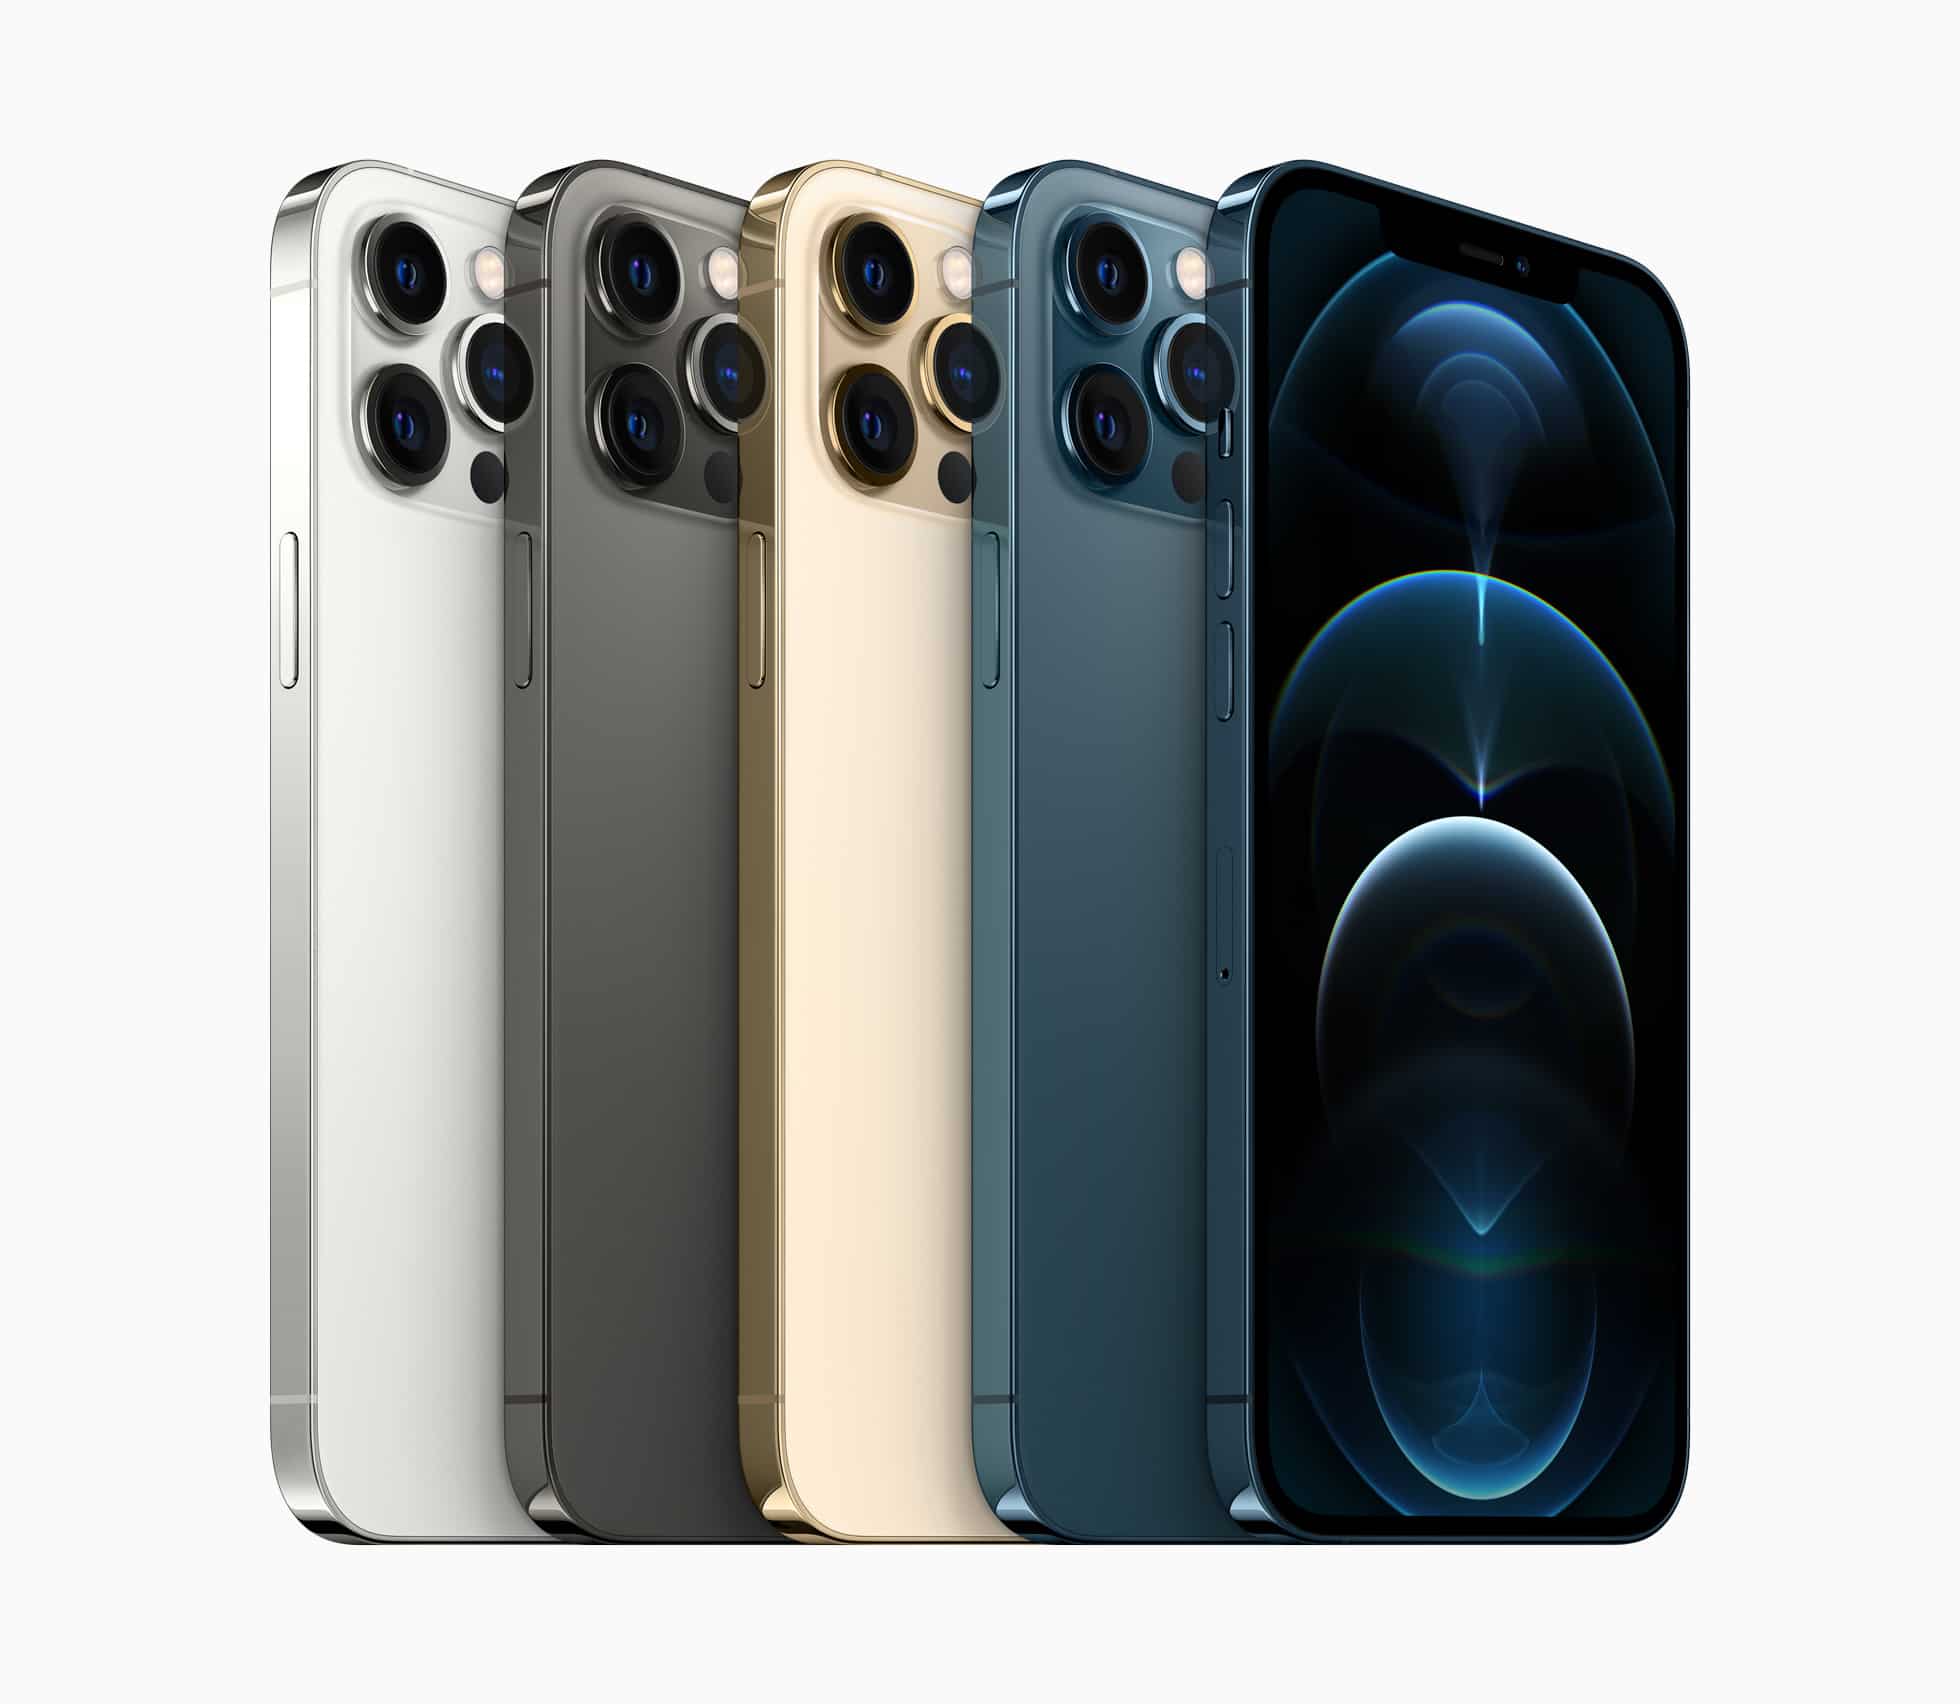 Todas as cores do iPhone 12 Pro Max de lado, inclinados